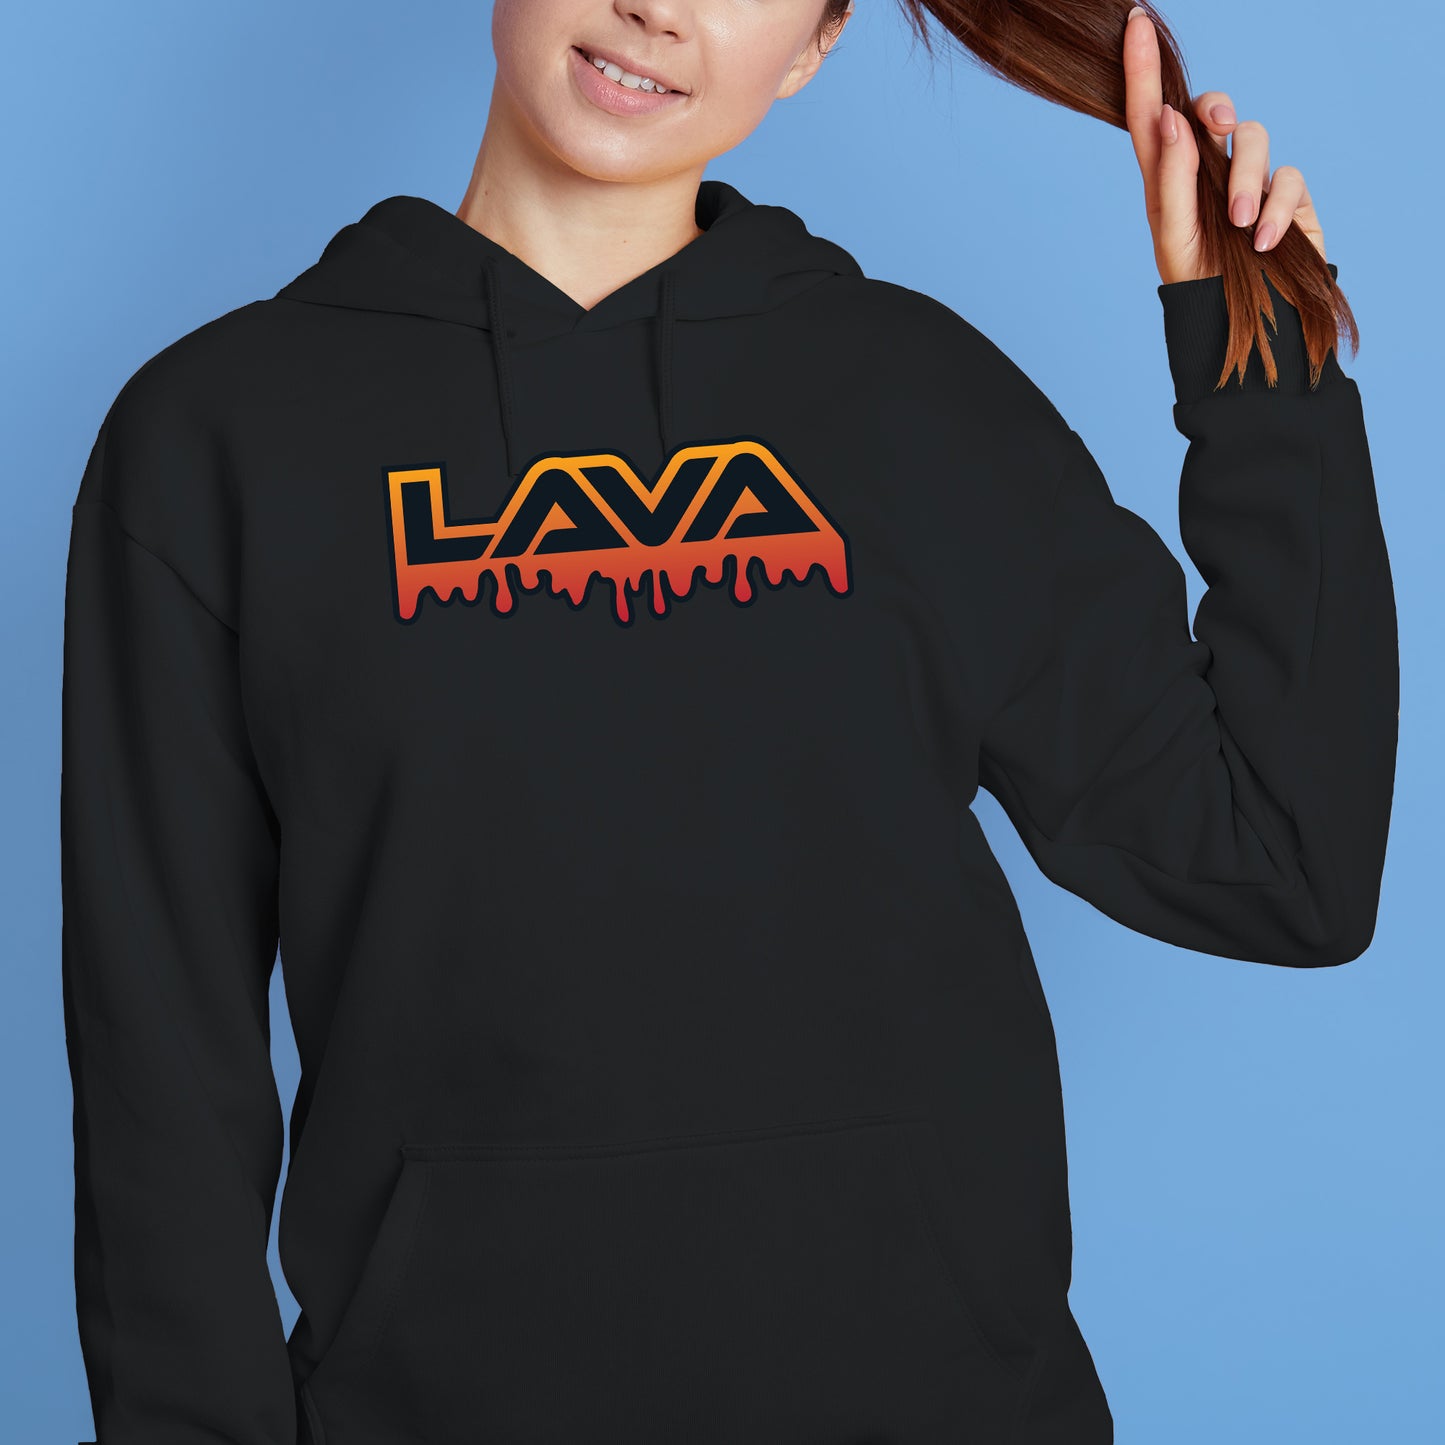 LAVA - Team Hoodie - Black